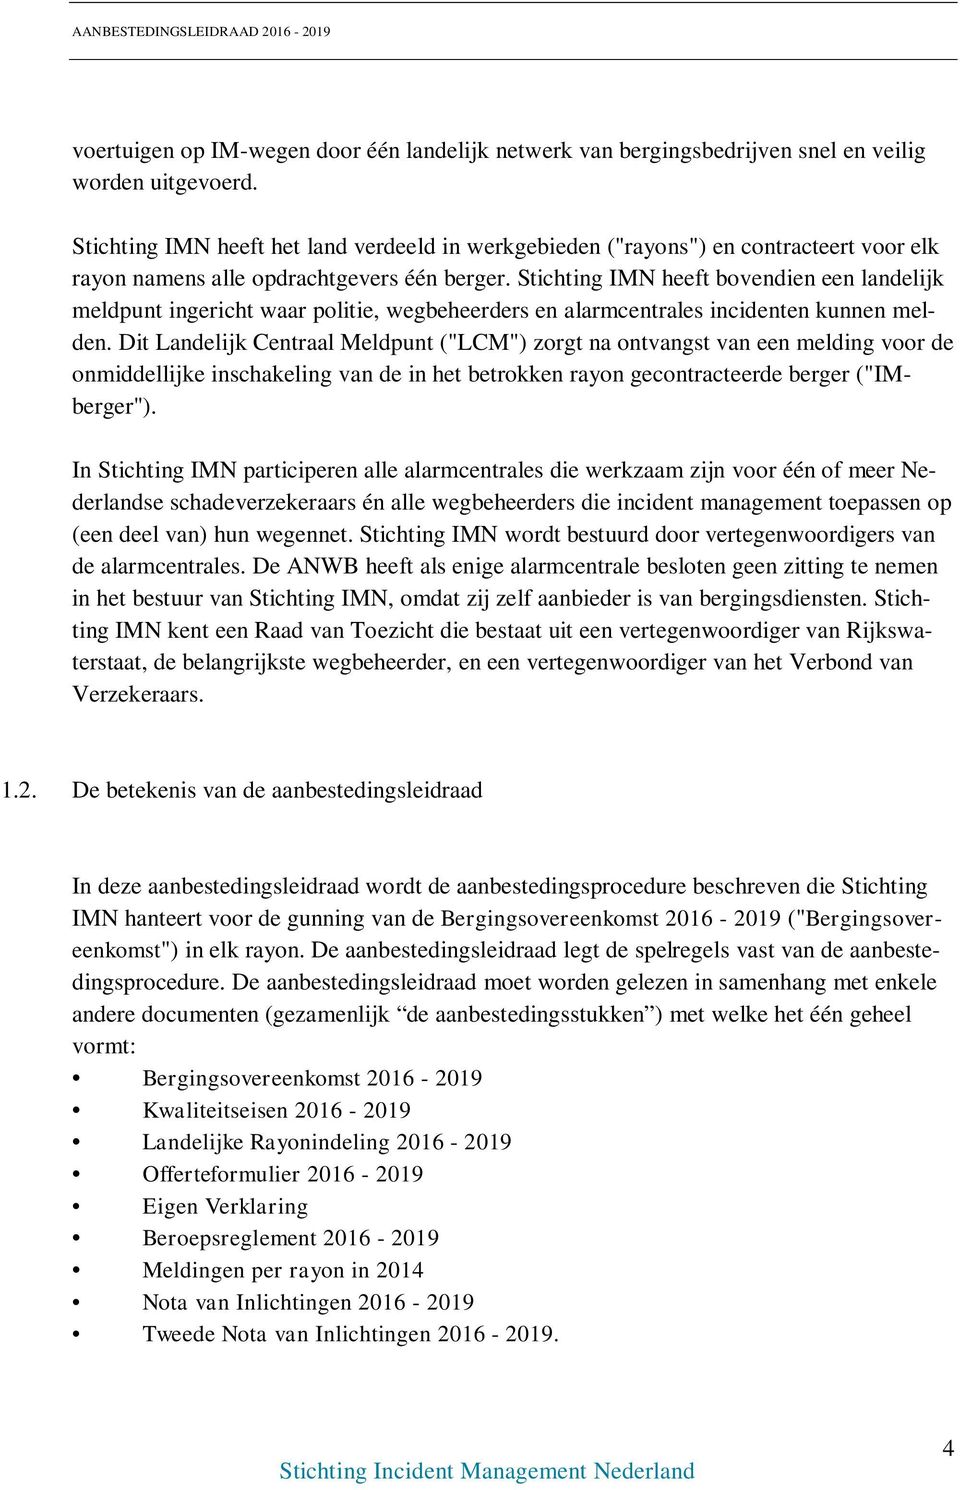 Stichting IMN heeft bovendien een landelijk meldpunt ingericht waar politie, wegbeheerders en alarmcentrales incidenten kunnen melden.